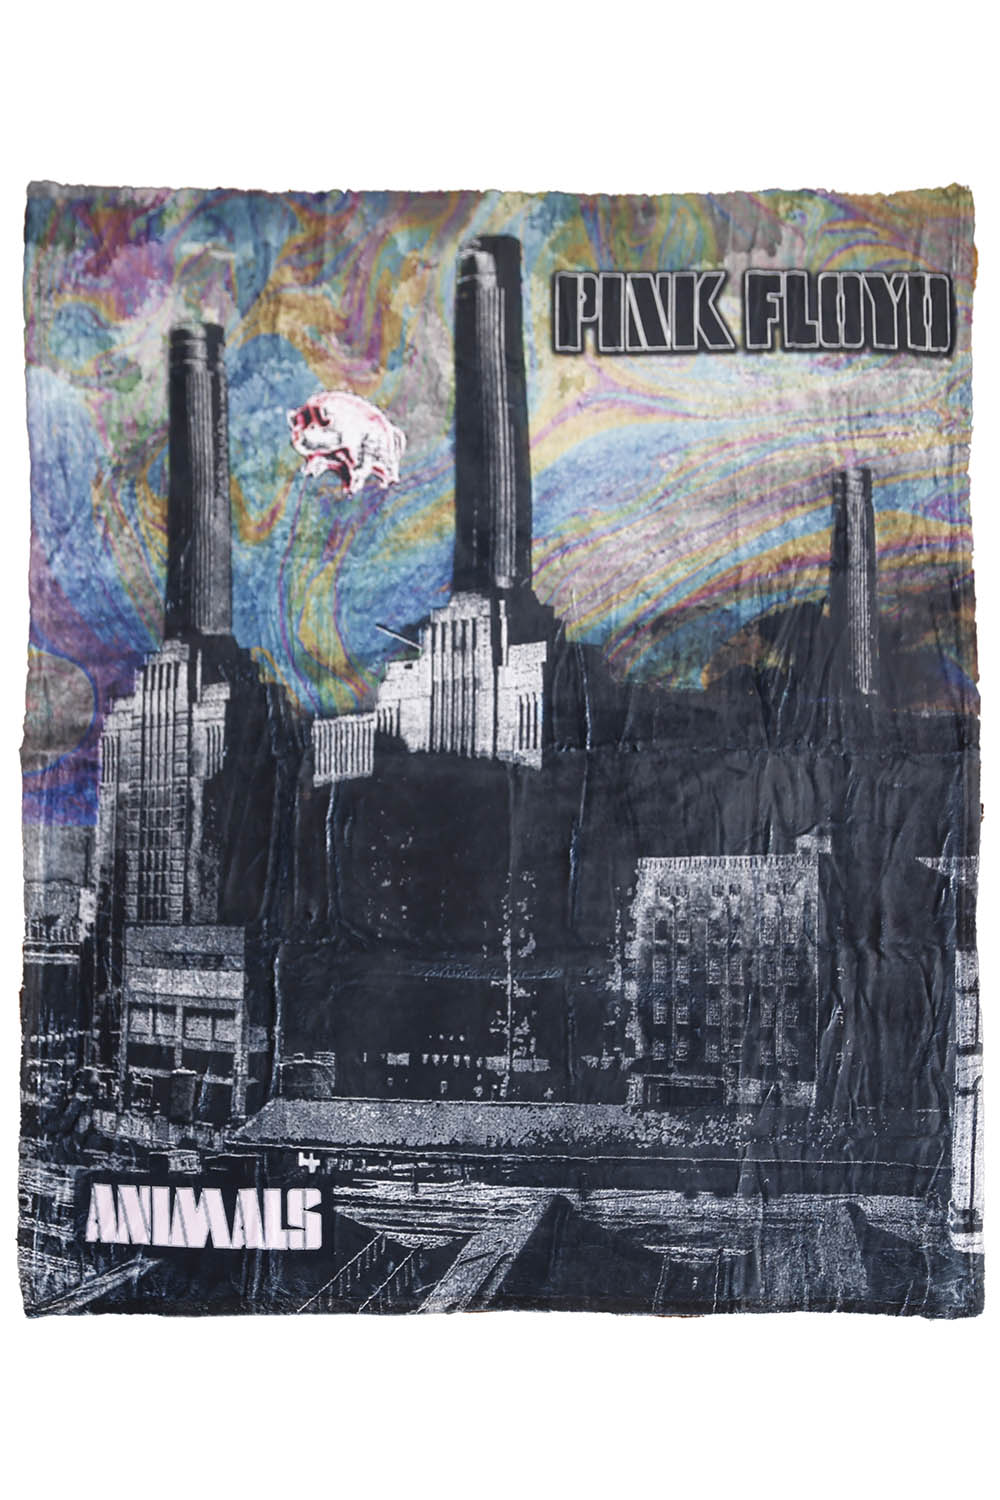 Pink Floyd Fleece Throw Blanket Animals Two Tone